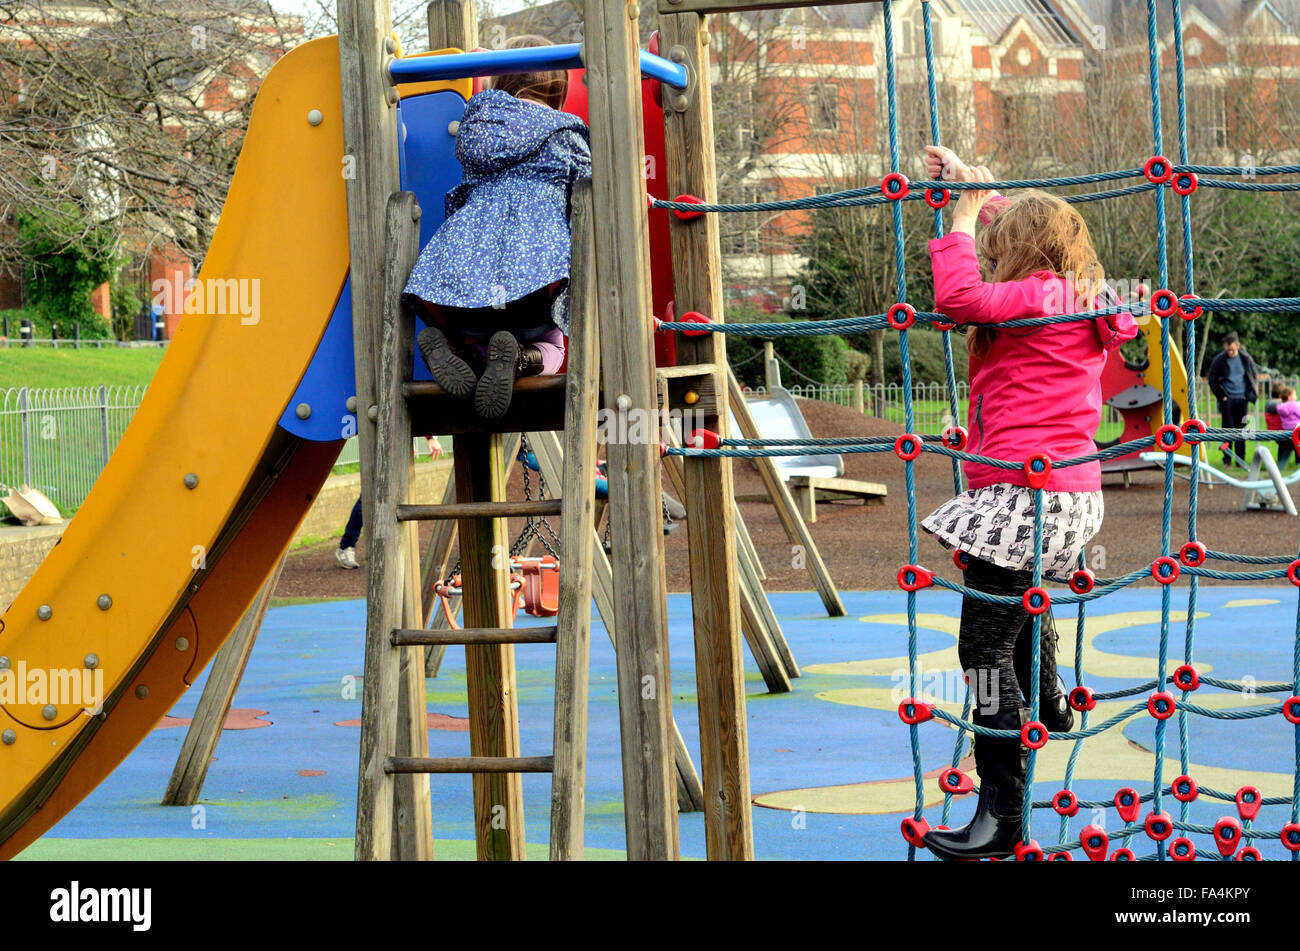 Les enfants jouent sur une escalade dans une aire de jeux pour enfants Banque D'Images